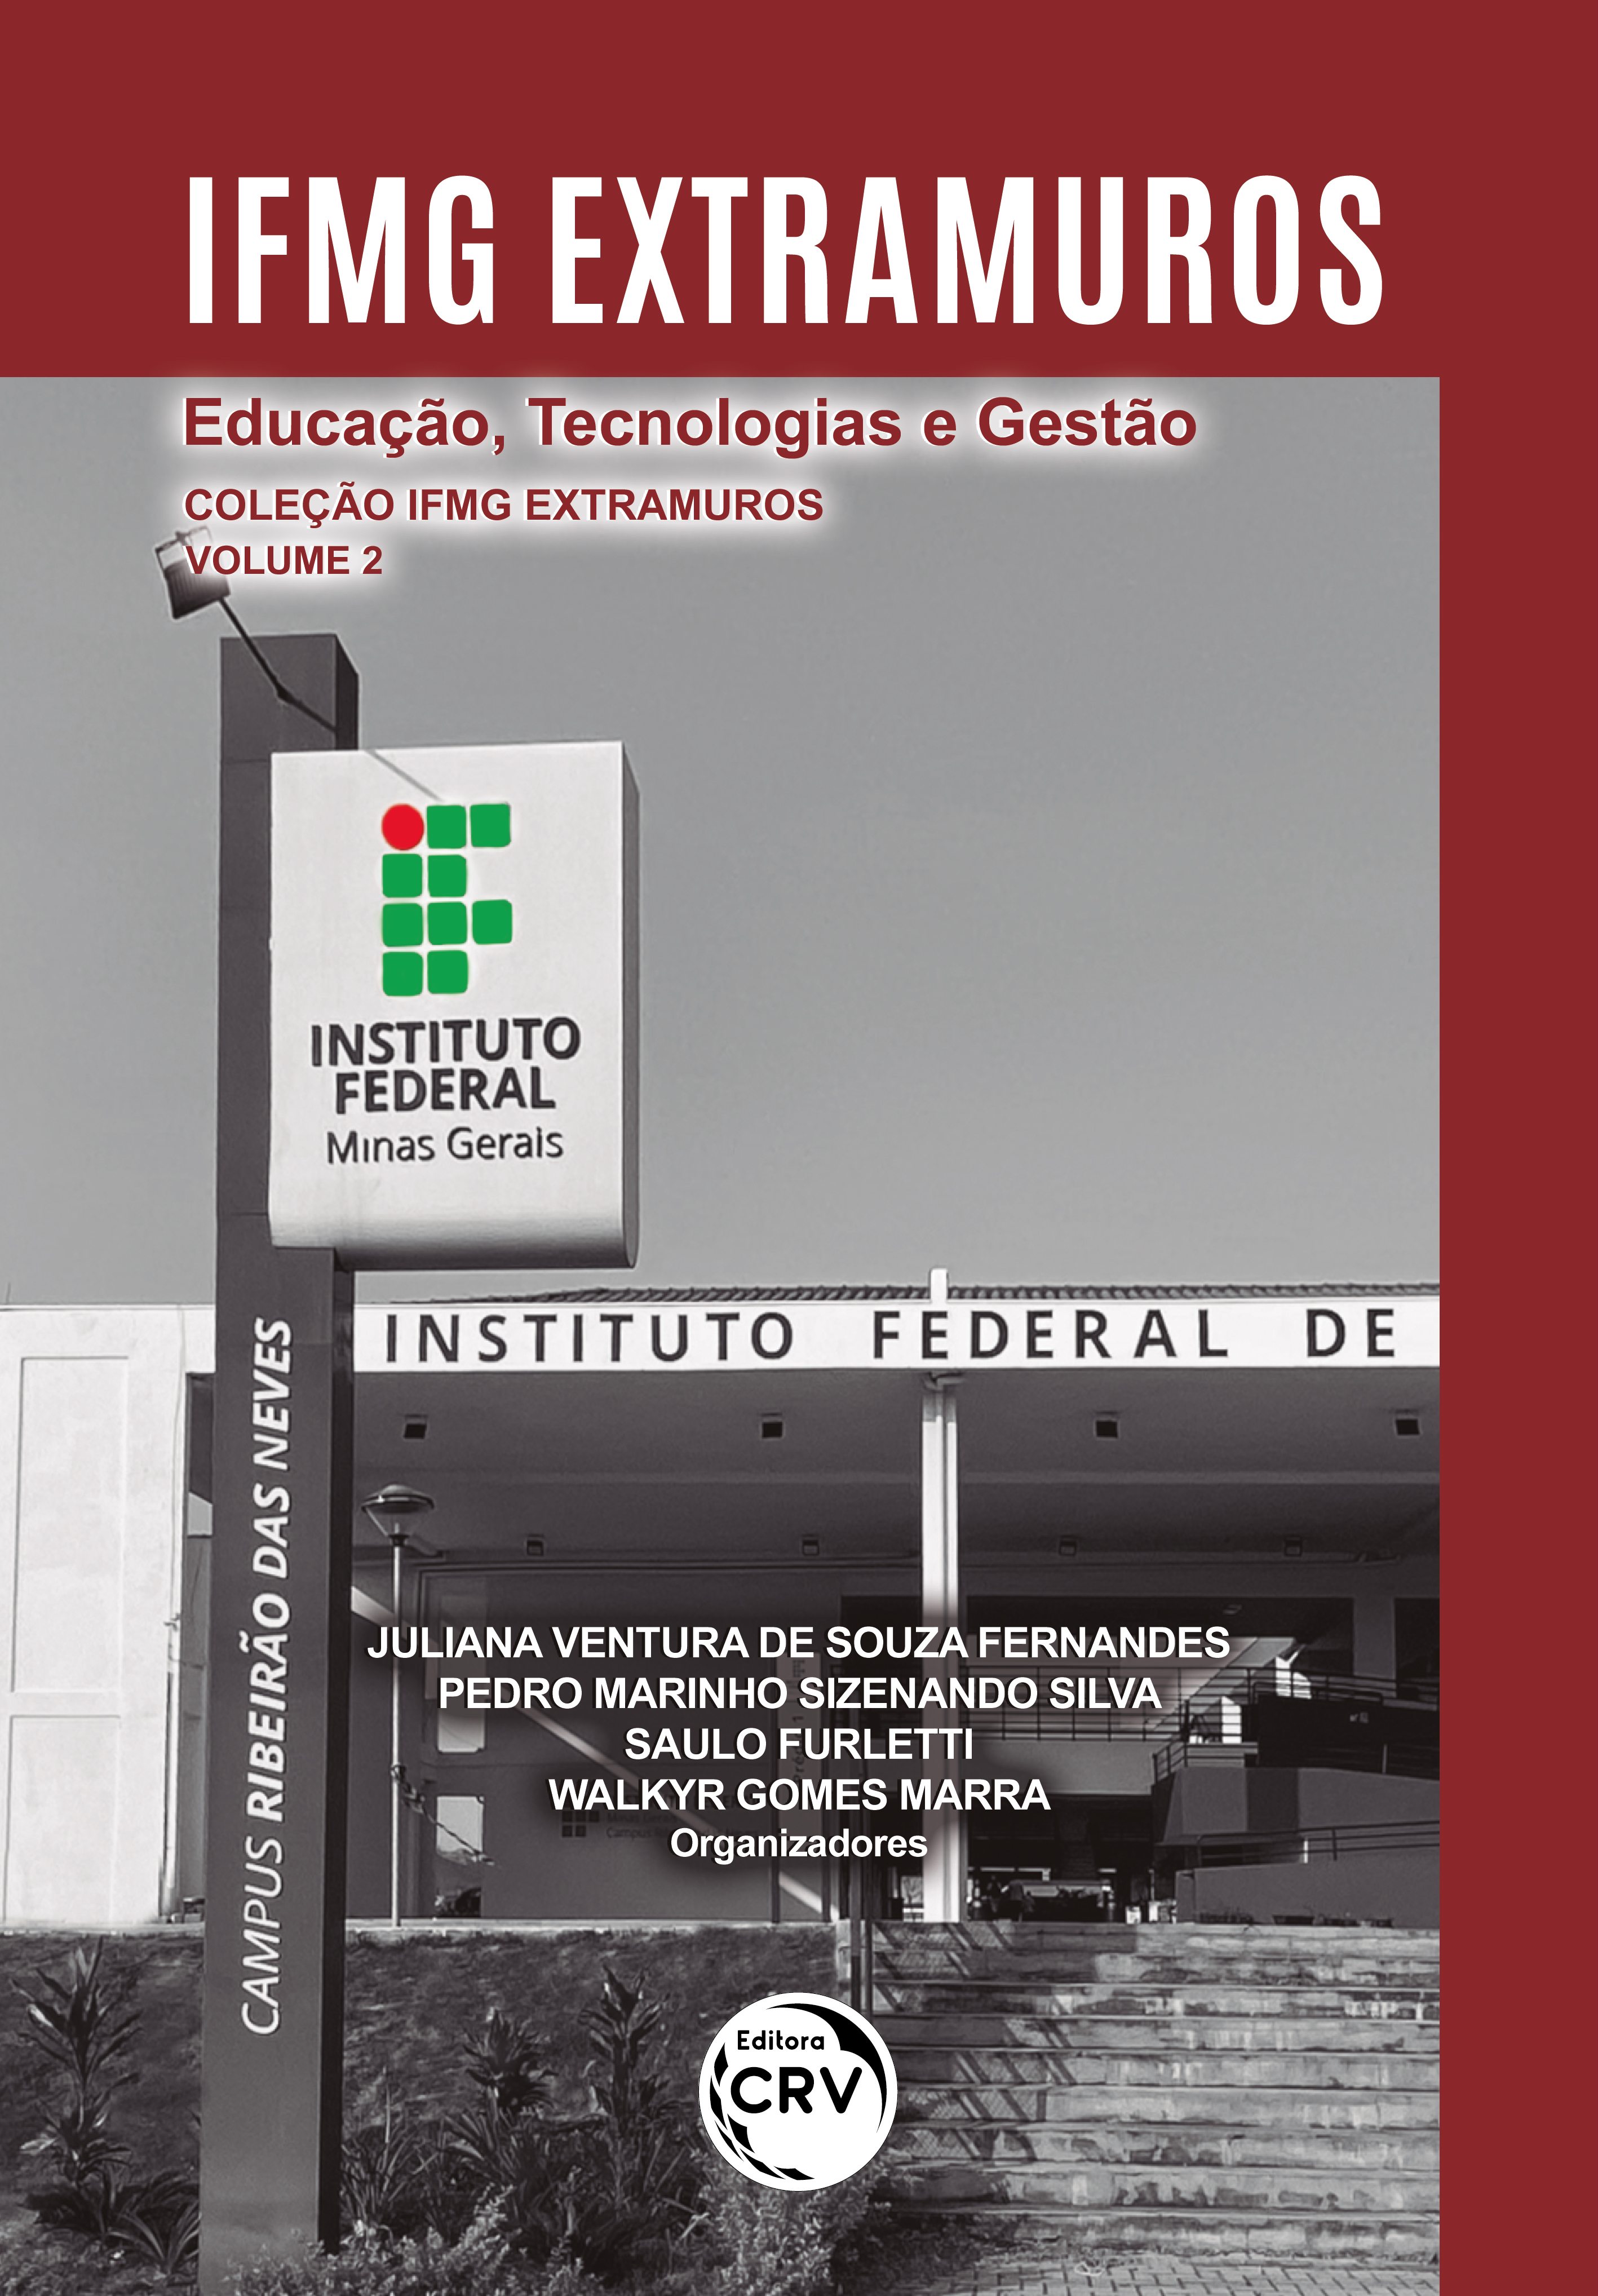 Revista Saberes da Extensão - Vol. 2 - 2021 by IFMG - Instituto Federal de  Minas Gerais - Issuu